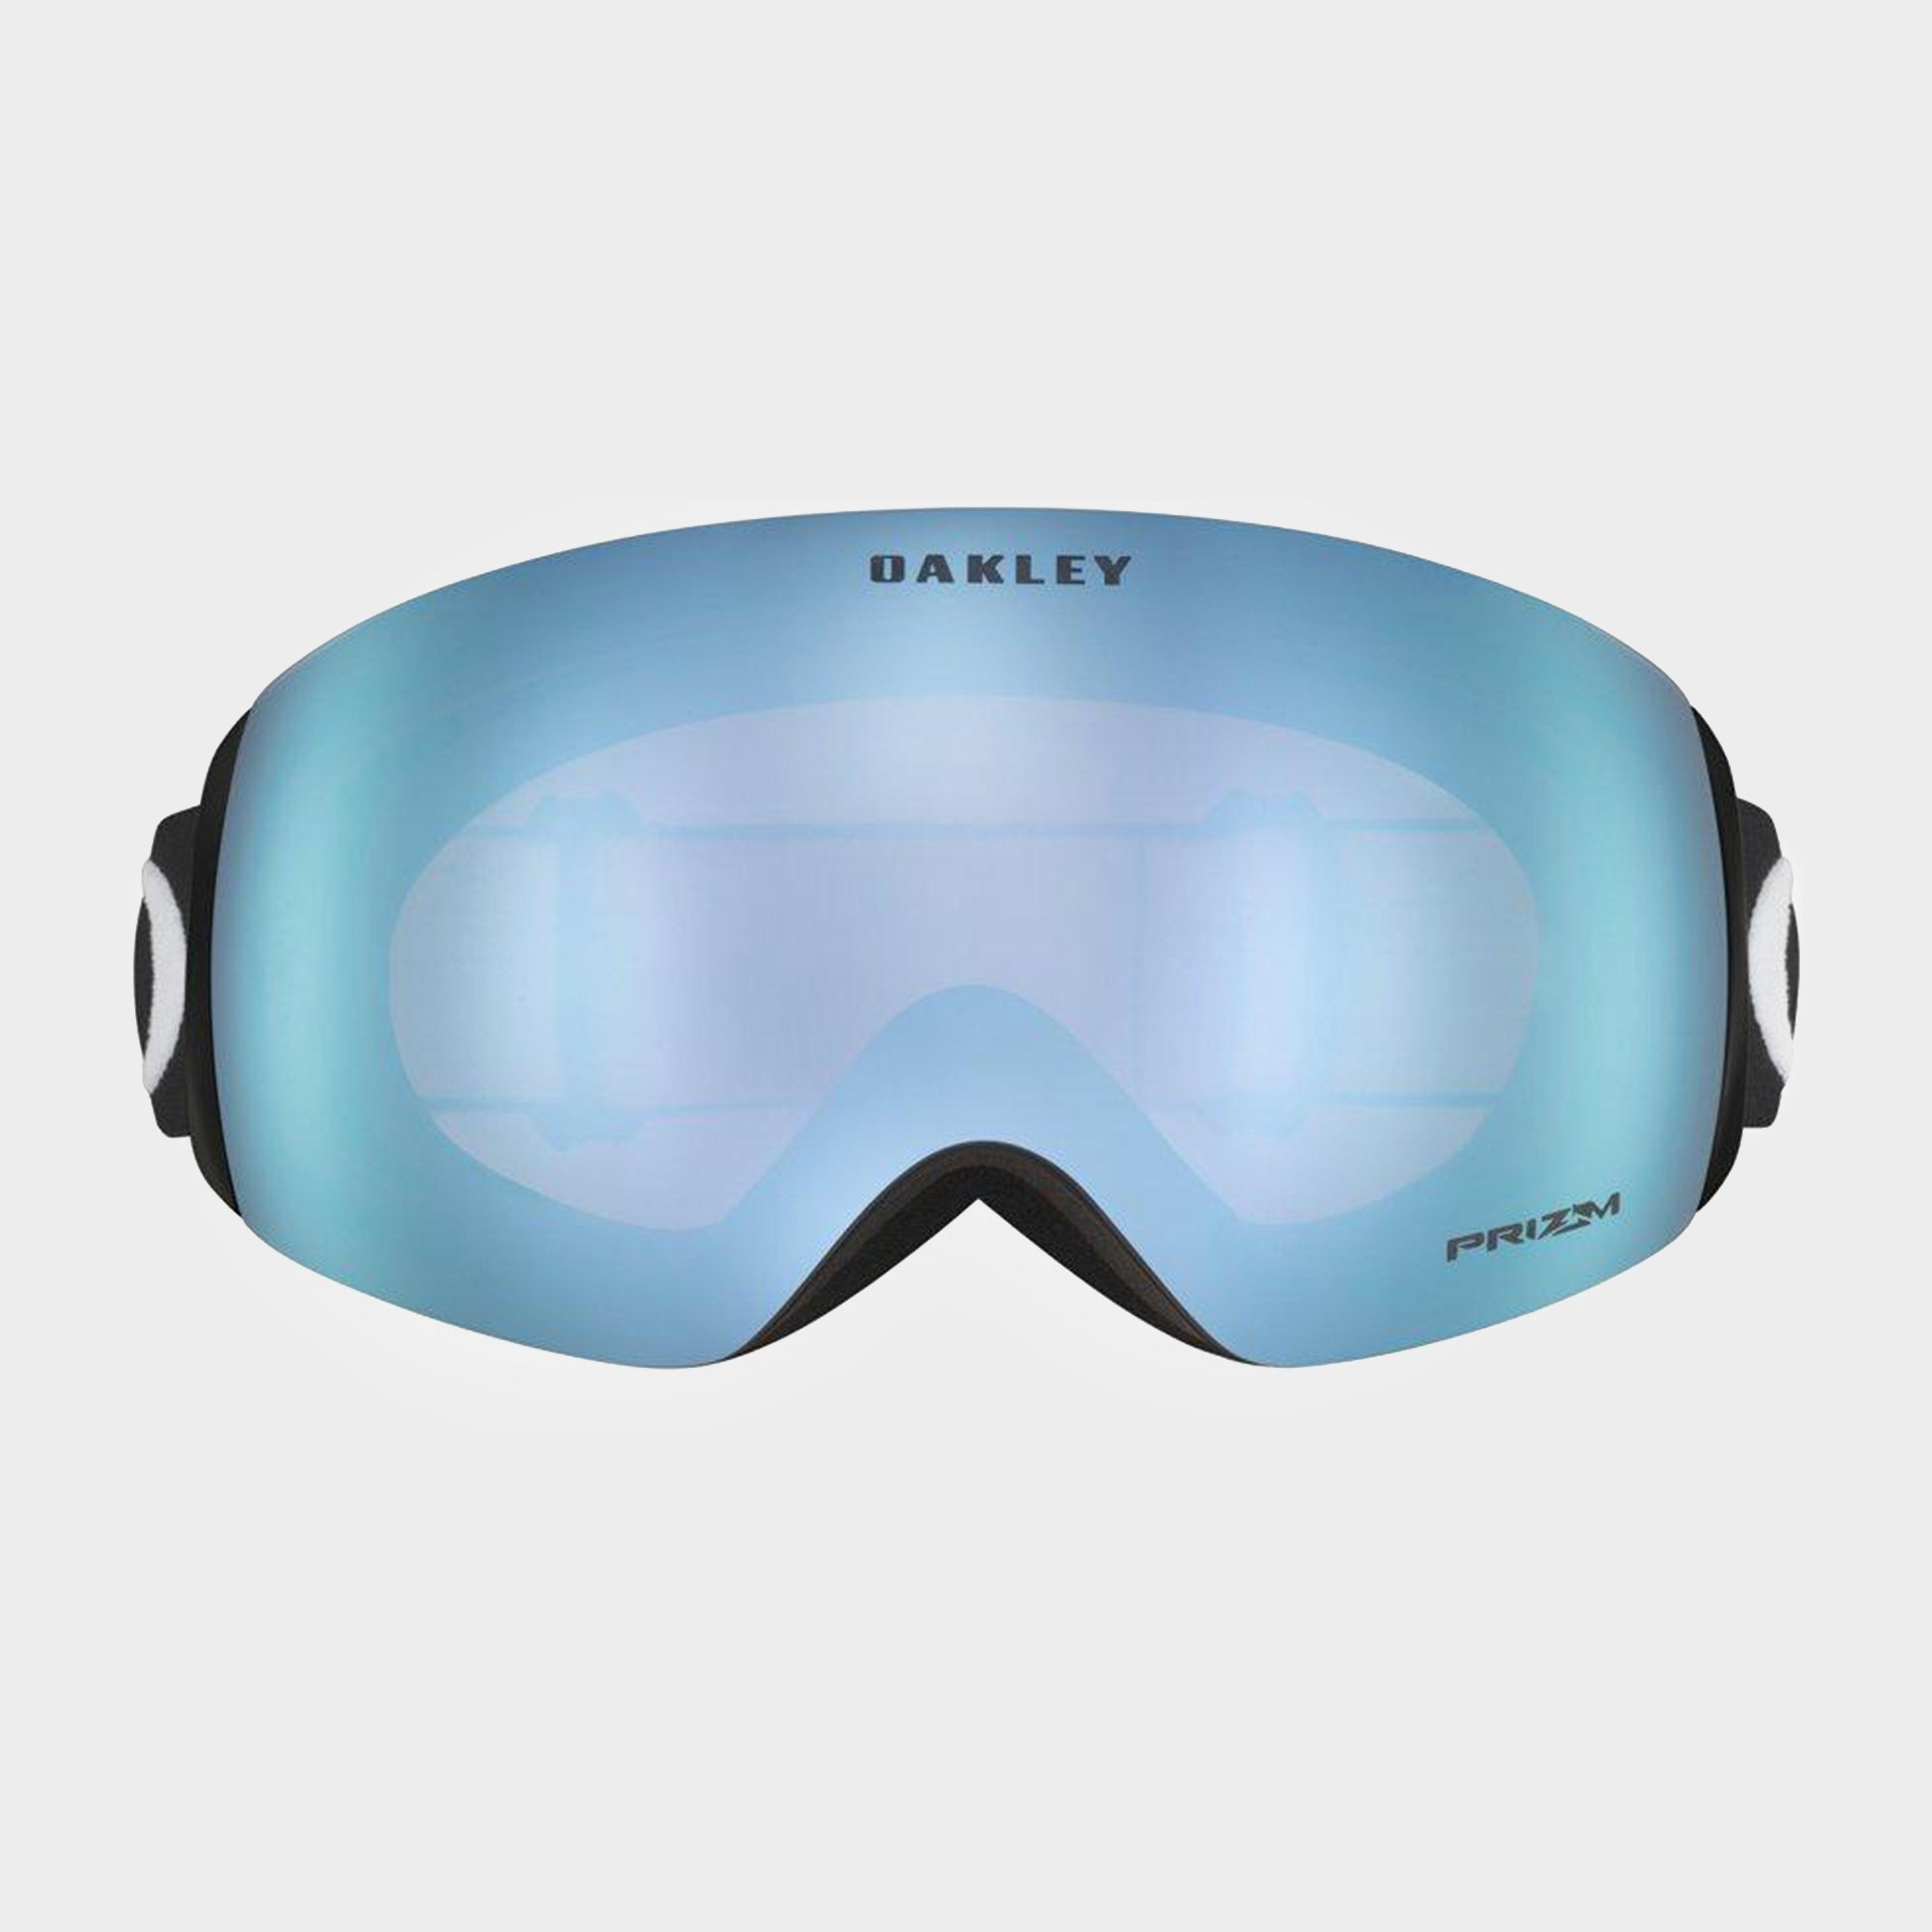 Oakley Flight Deck™ XM Snow Goggles Review